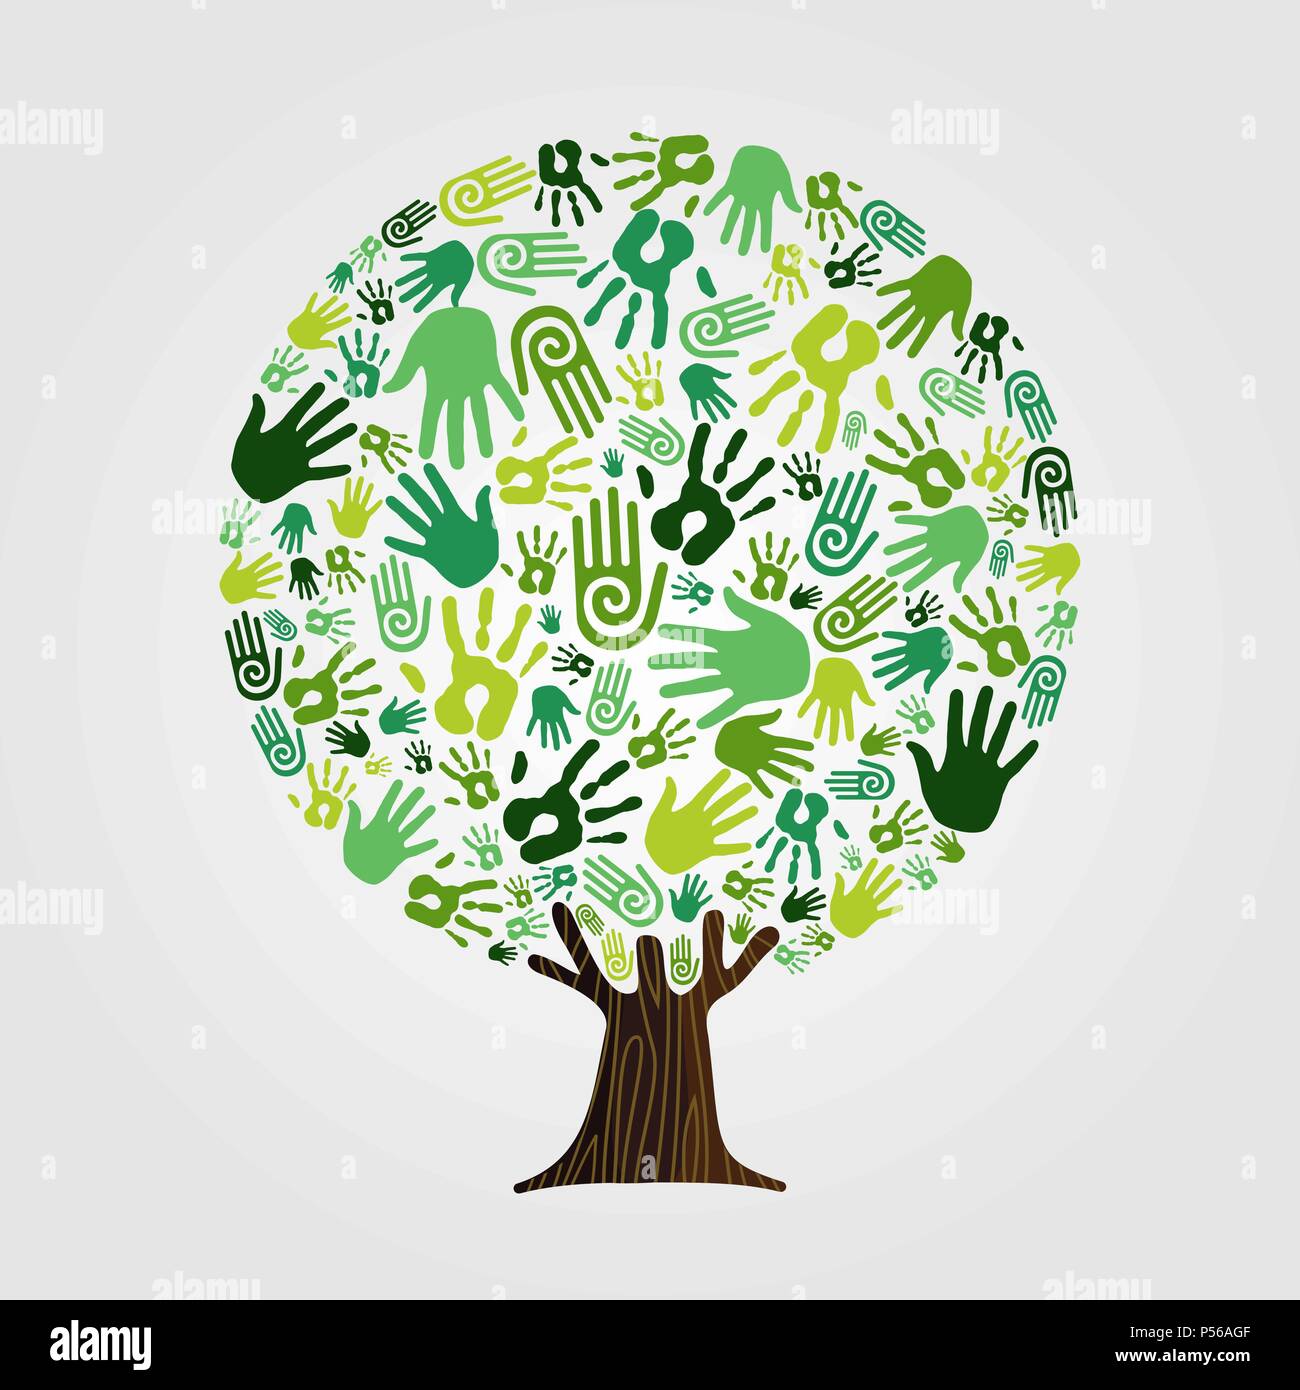 Arborescence constituée de mains humaines vert avec des branches et racines. Concept de l'aide de la nature, de l'environnement groupe ou d'équipe de soins de la terre. Vecteur EPS10. Illustration de Vecteur